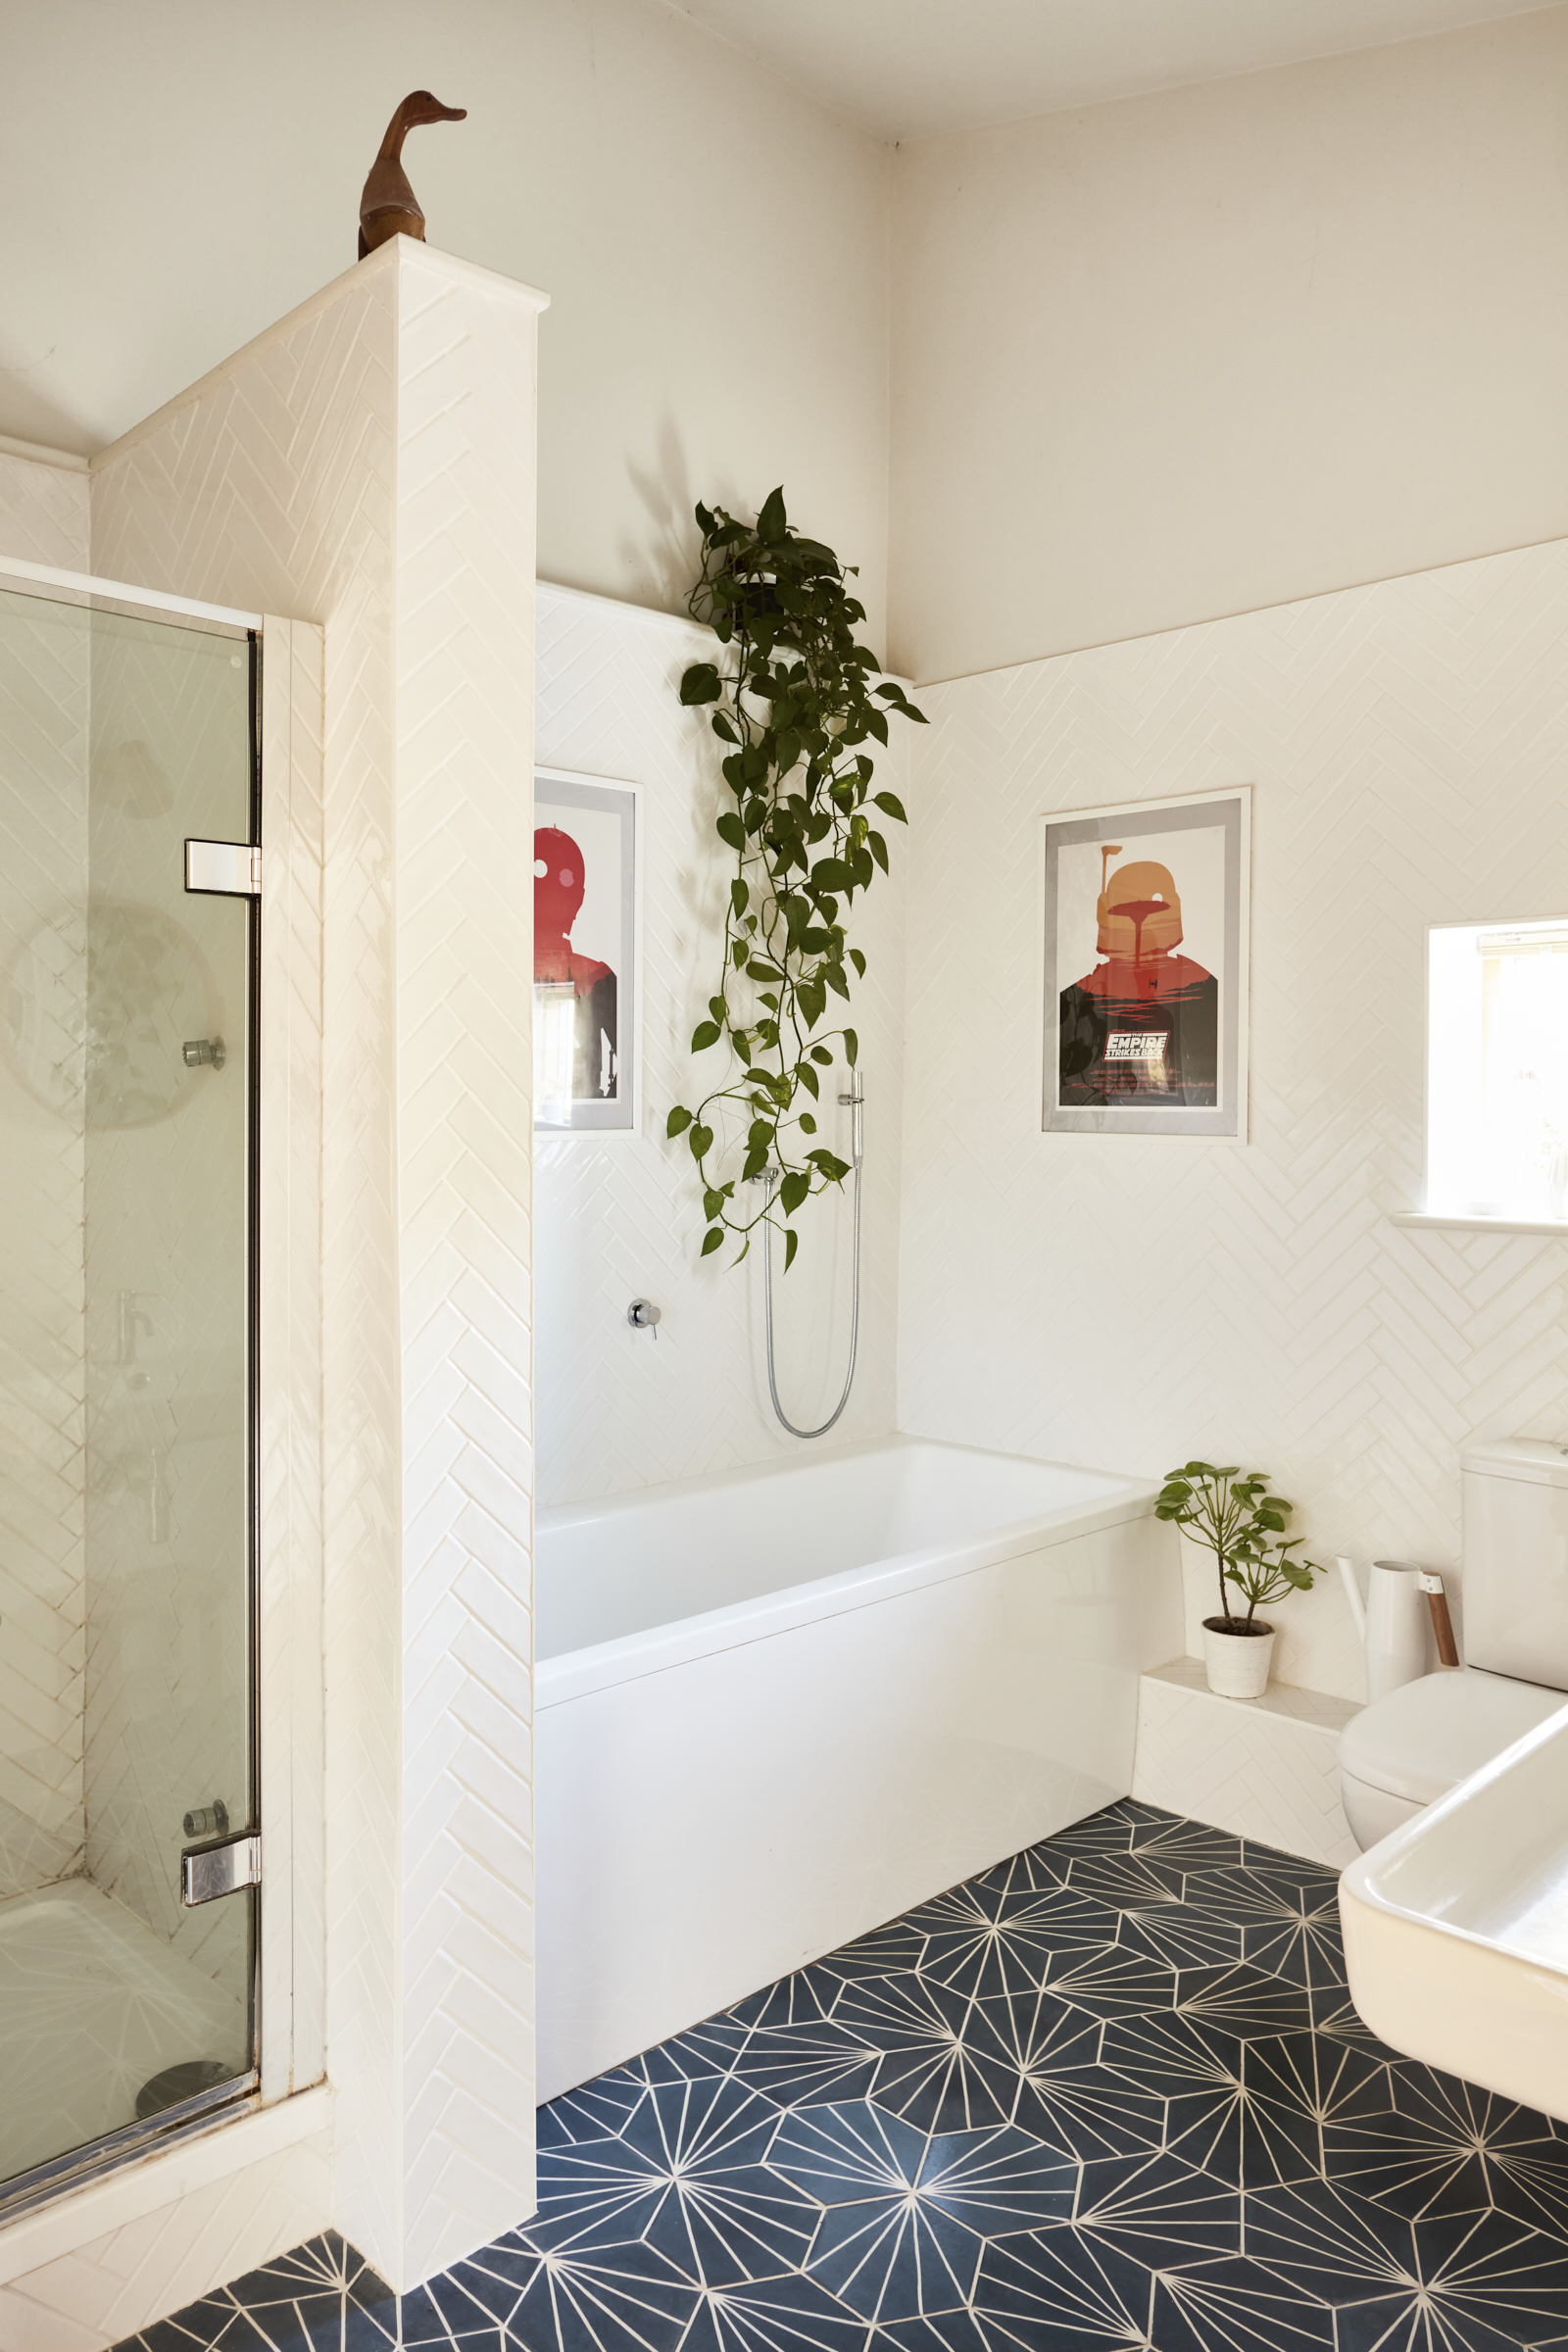 salle de bain décoration contemporaine carrelage dandelion